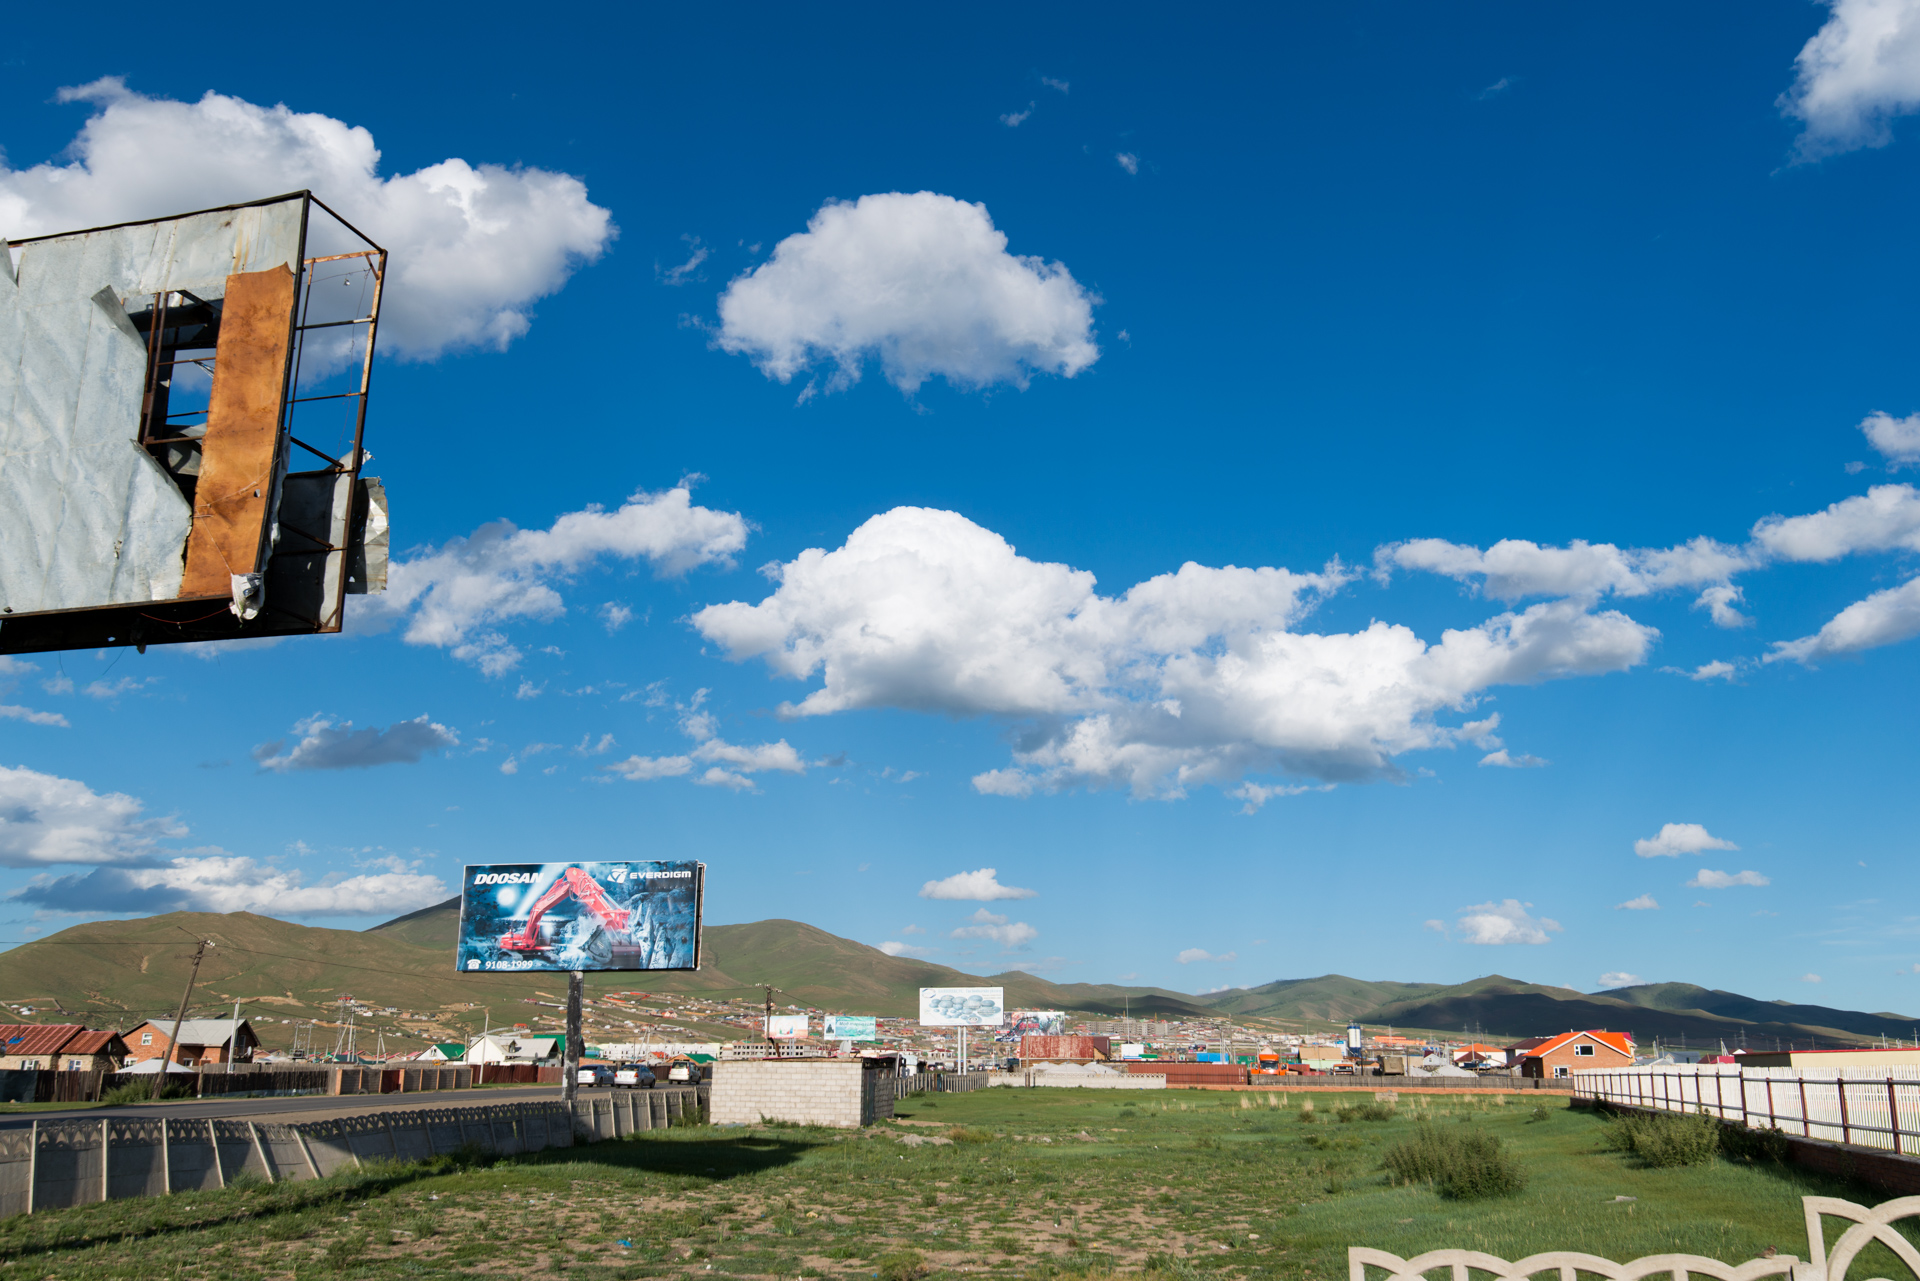 150727_022.jpg : 몽골 학습탐사 2진 사진 7월27일 ...자